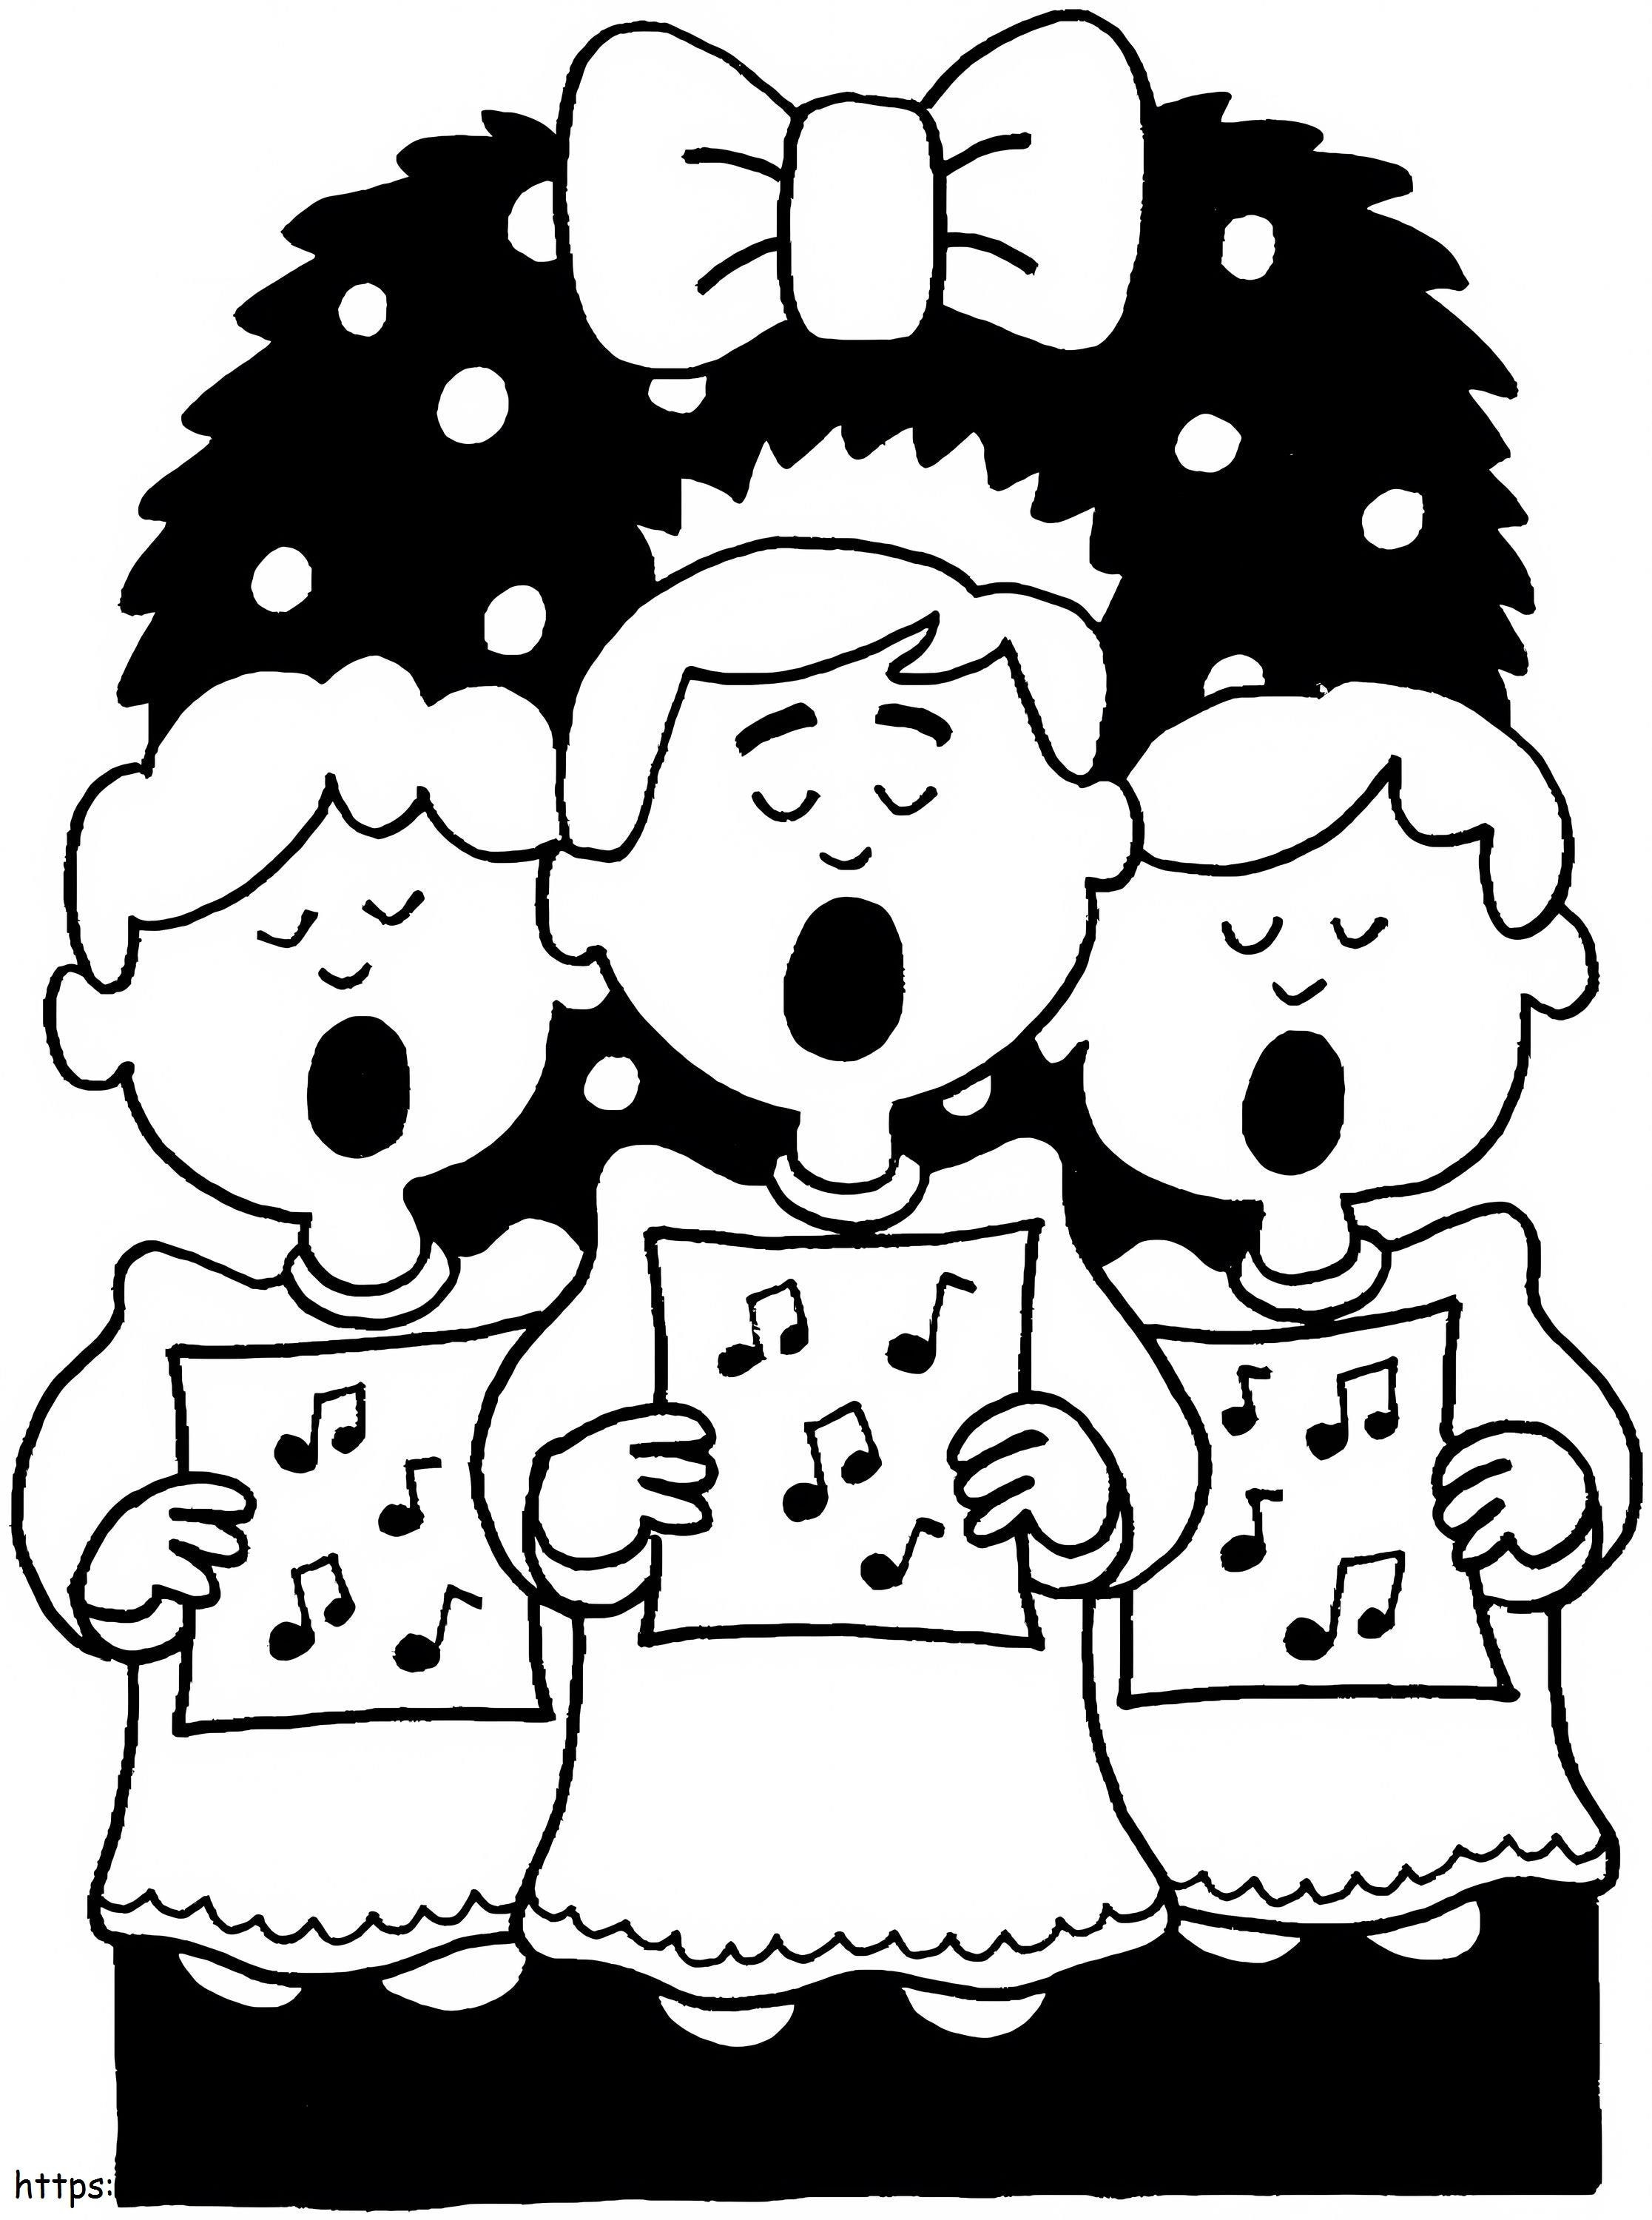 Das Weihnachtslied singen ausmalbilder